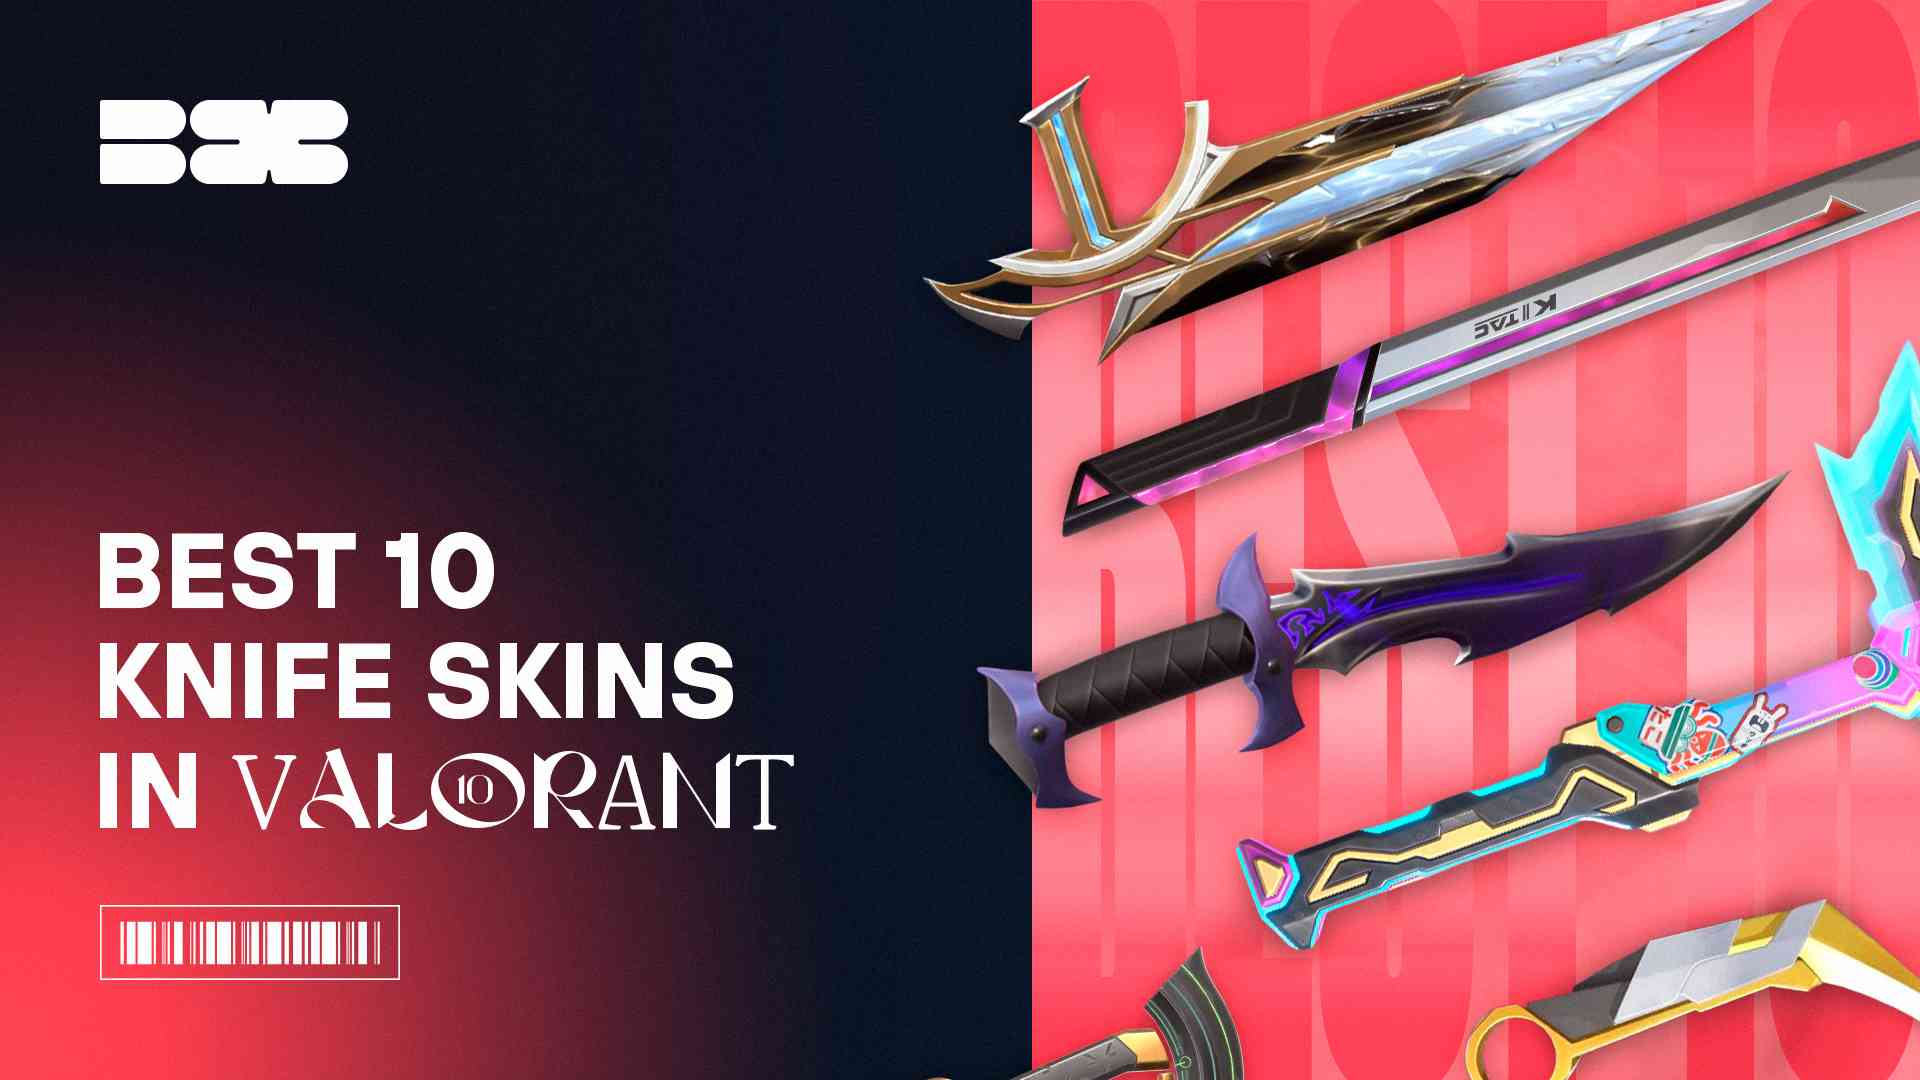 Best 10 Knife Skins in Valorant